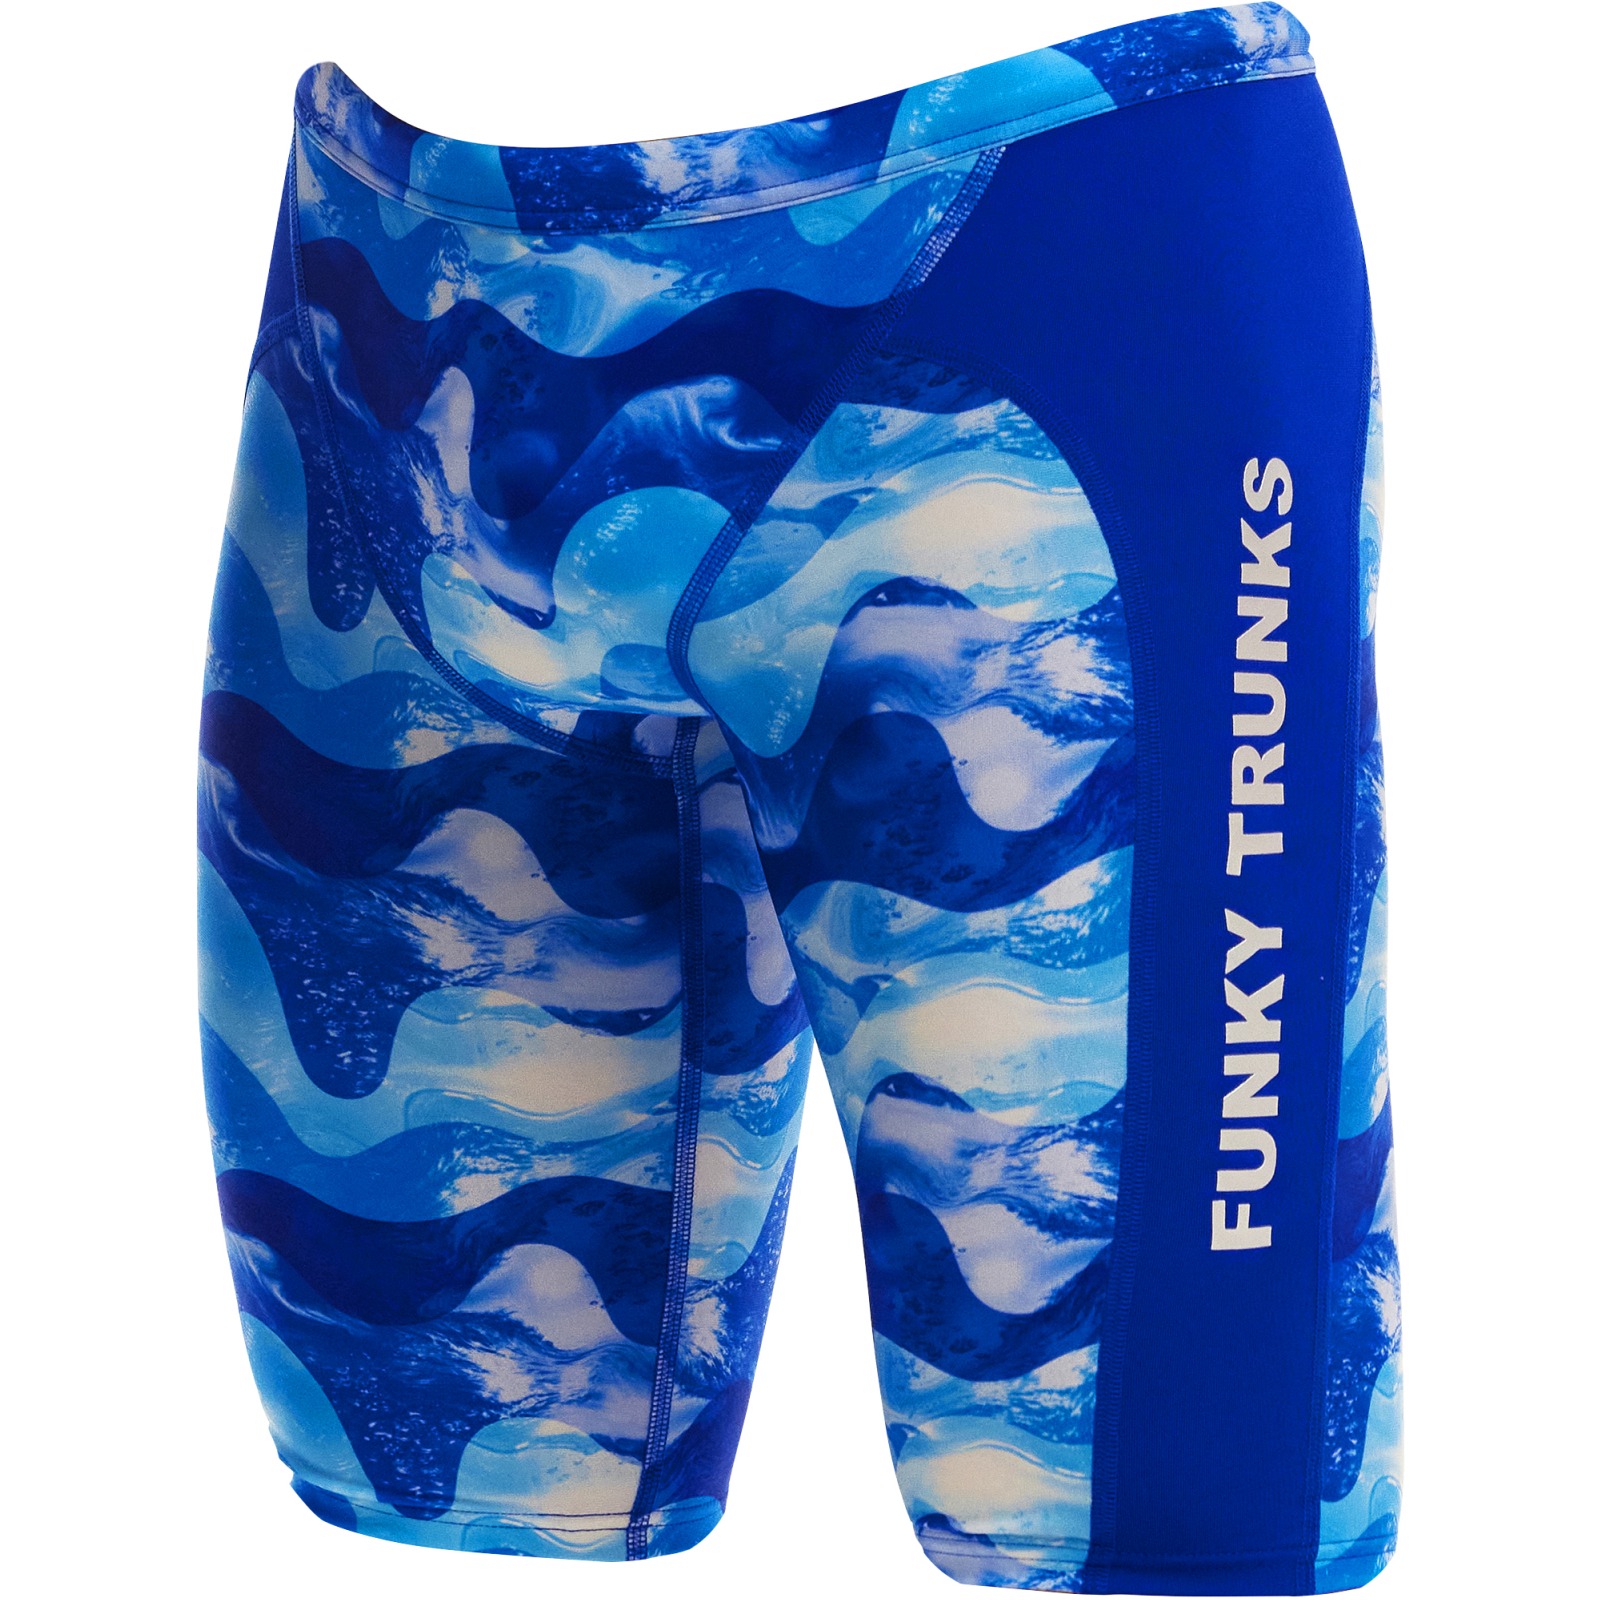 Produktbild von Funky Trunks Training Eco Jammers Badehose Herren - Dive In